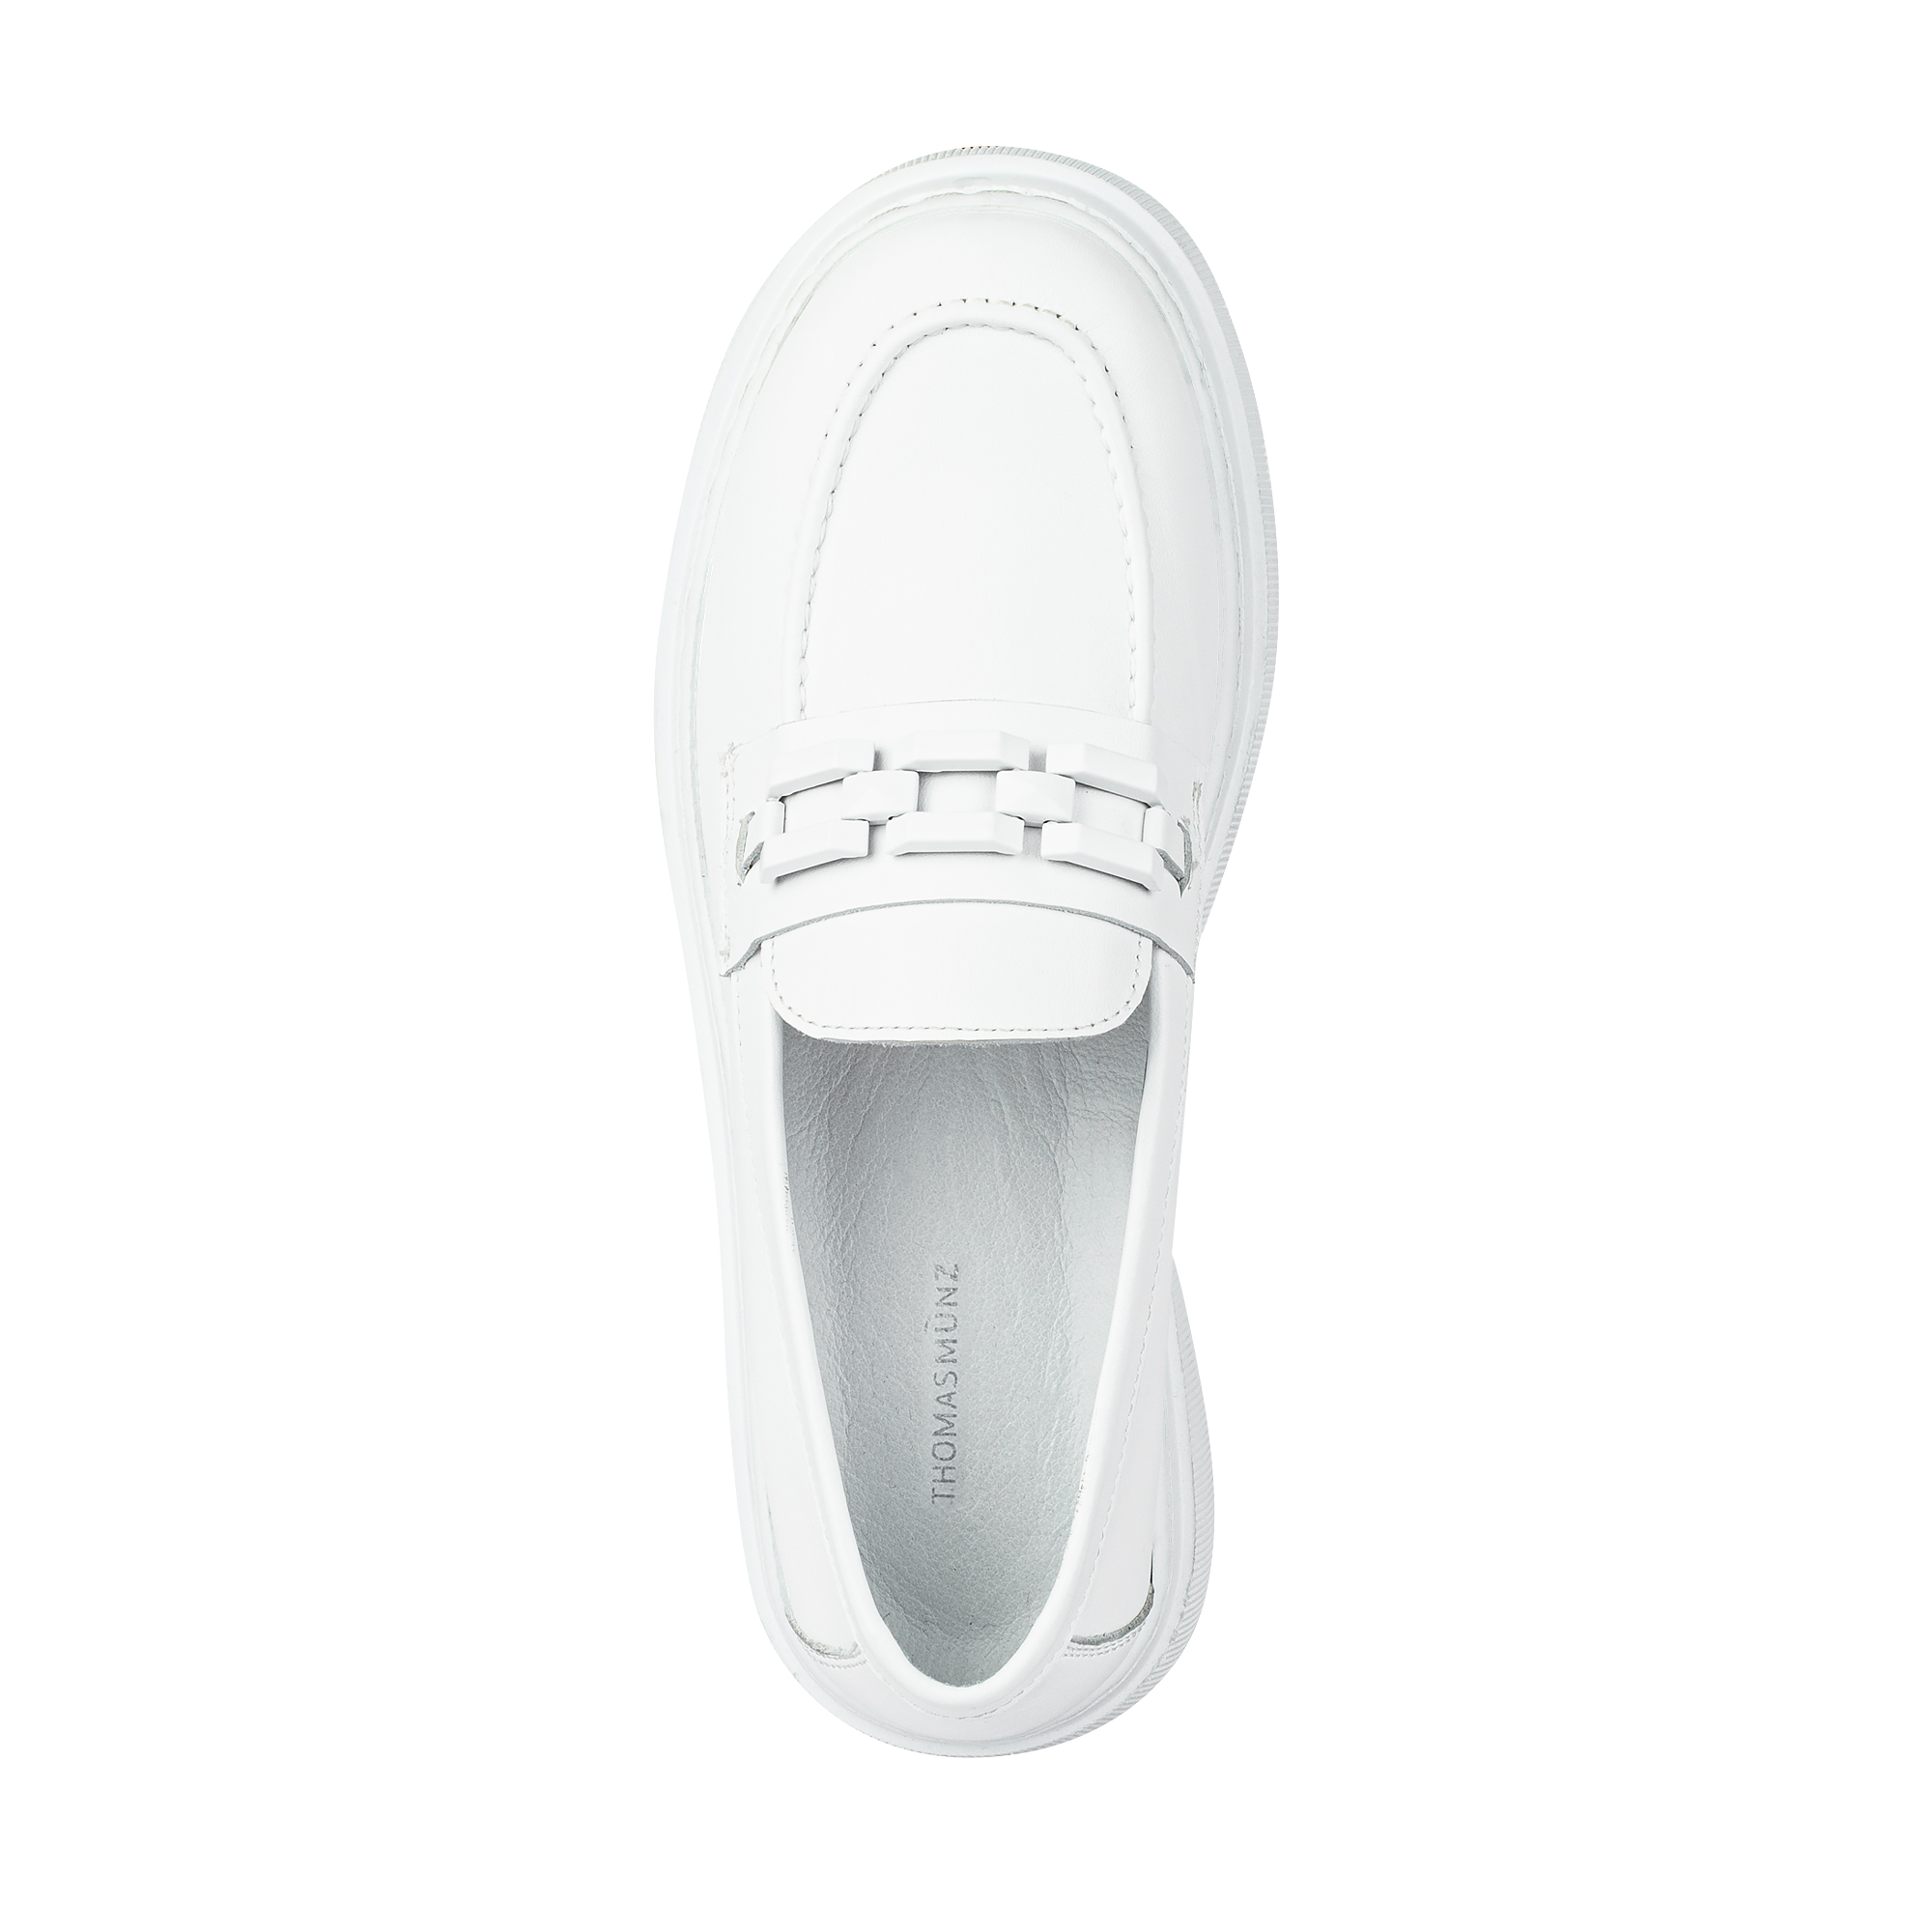 Туфли Thomas Munz 555-001A-1101, цвет белый, размер 37 - фото 5